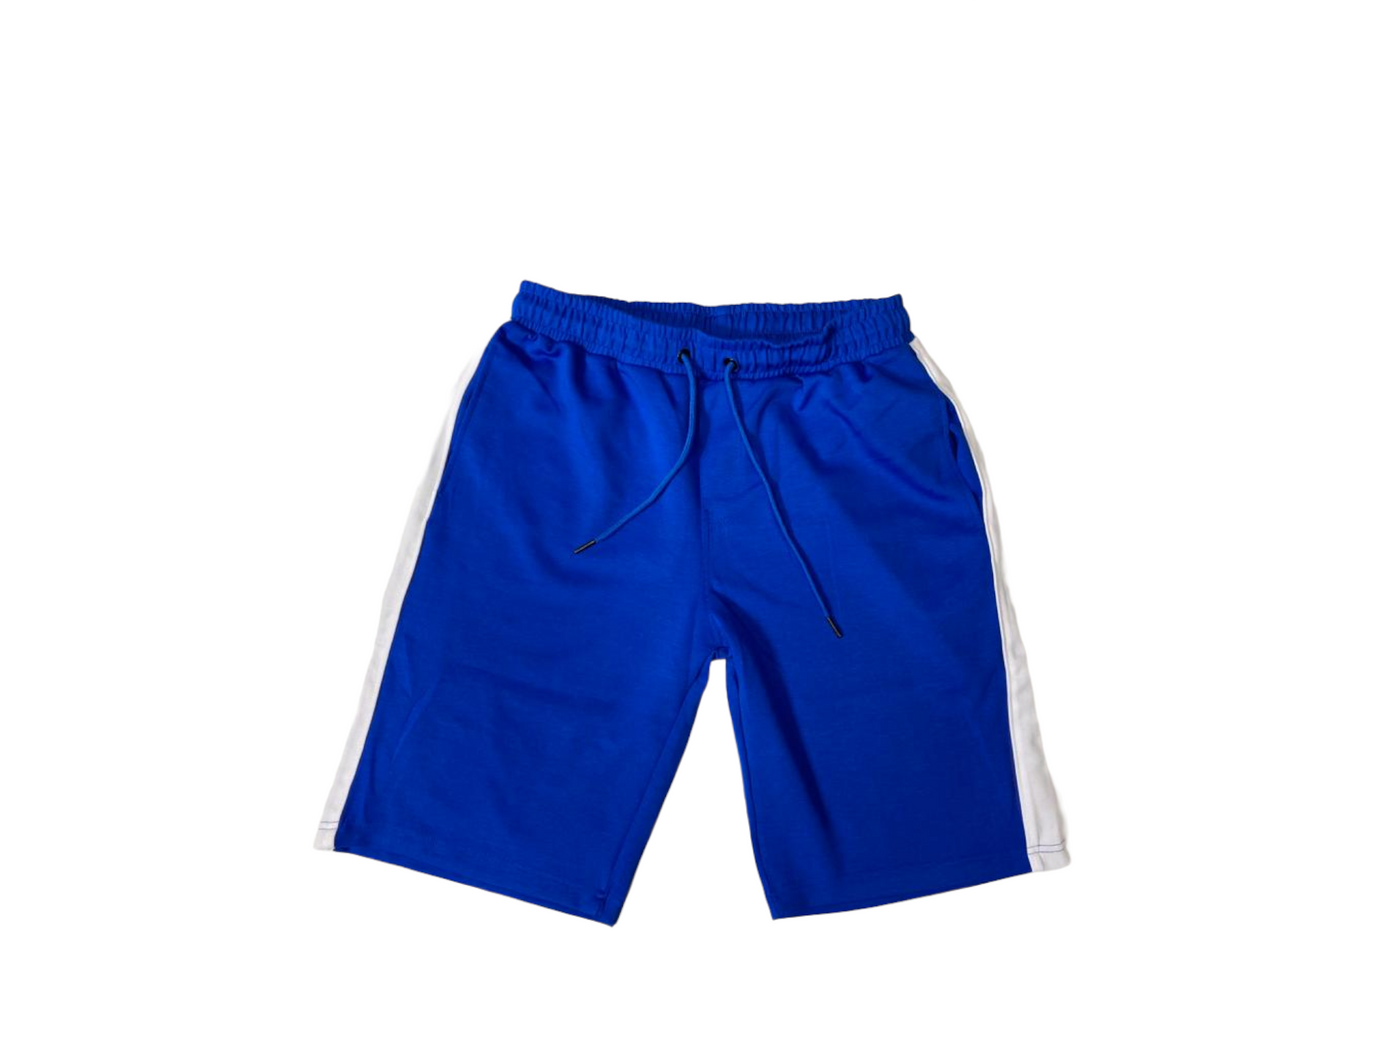 Royal Blue & White Tech Shorts